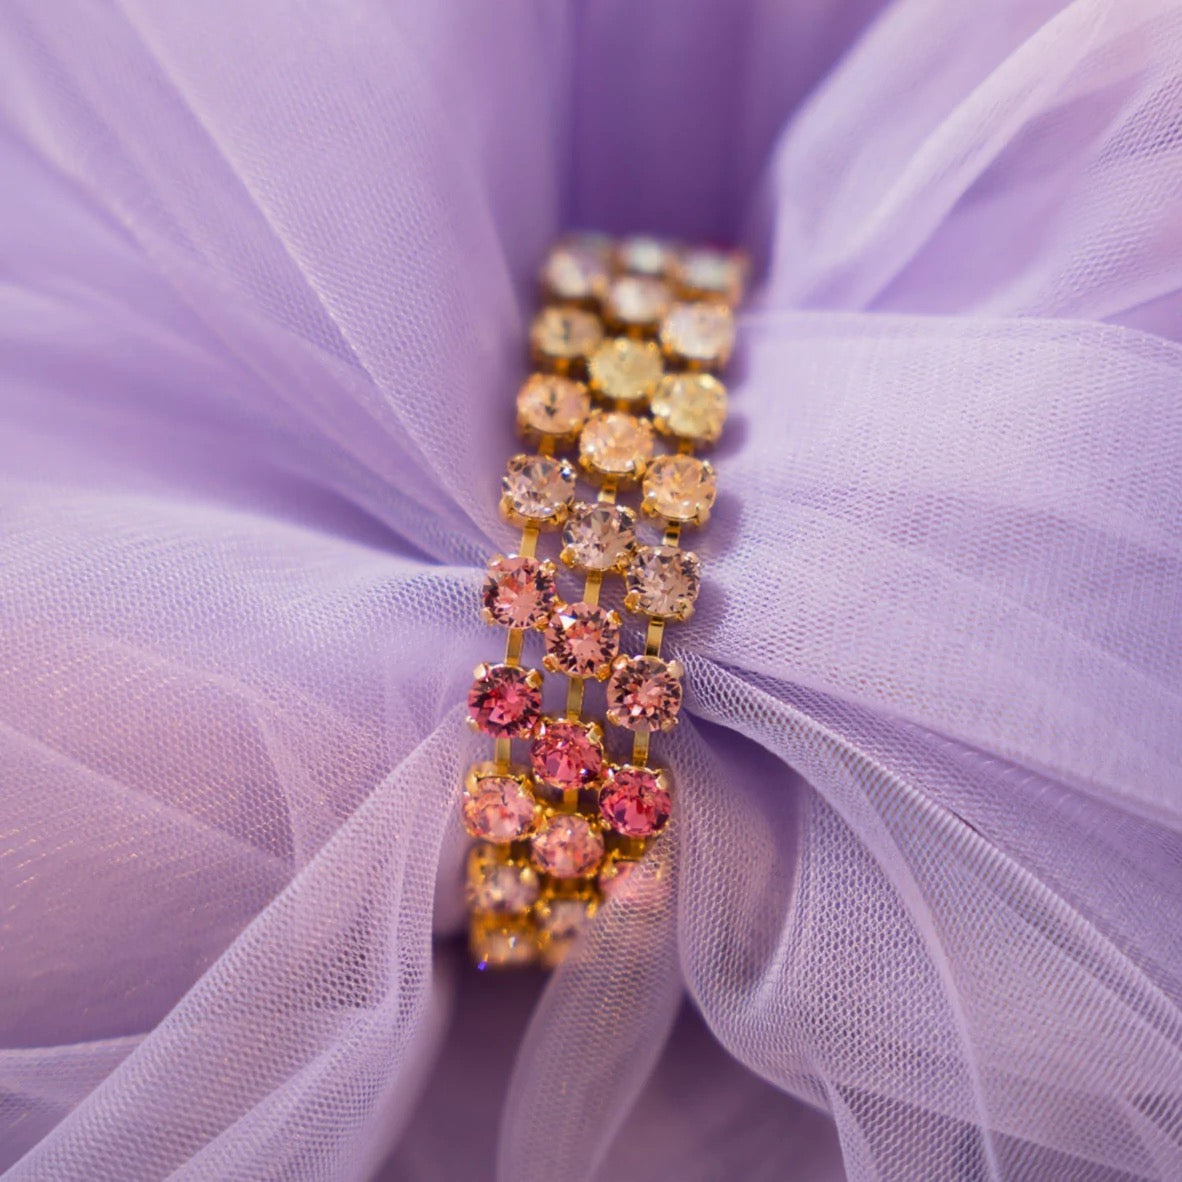 Gold Rosanna Pastel Rainbow Crystal Bracelet